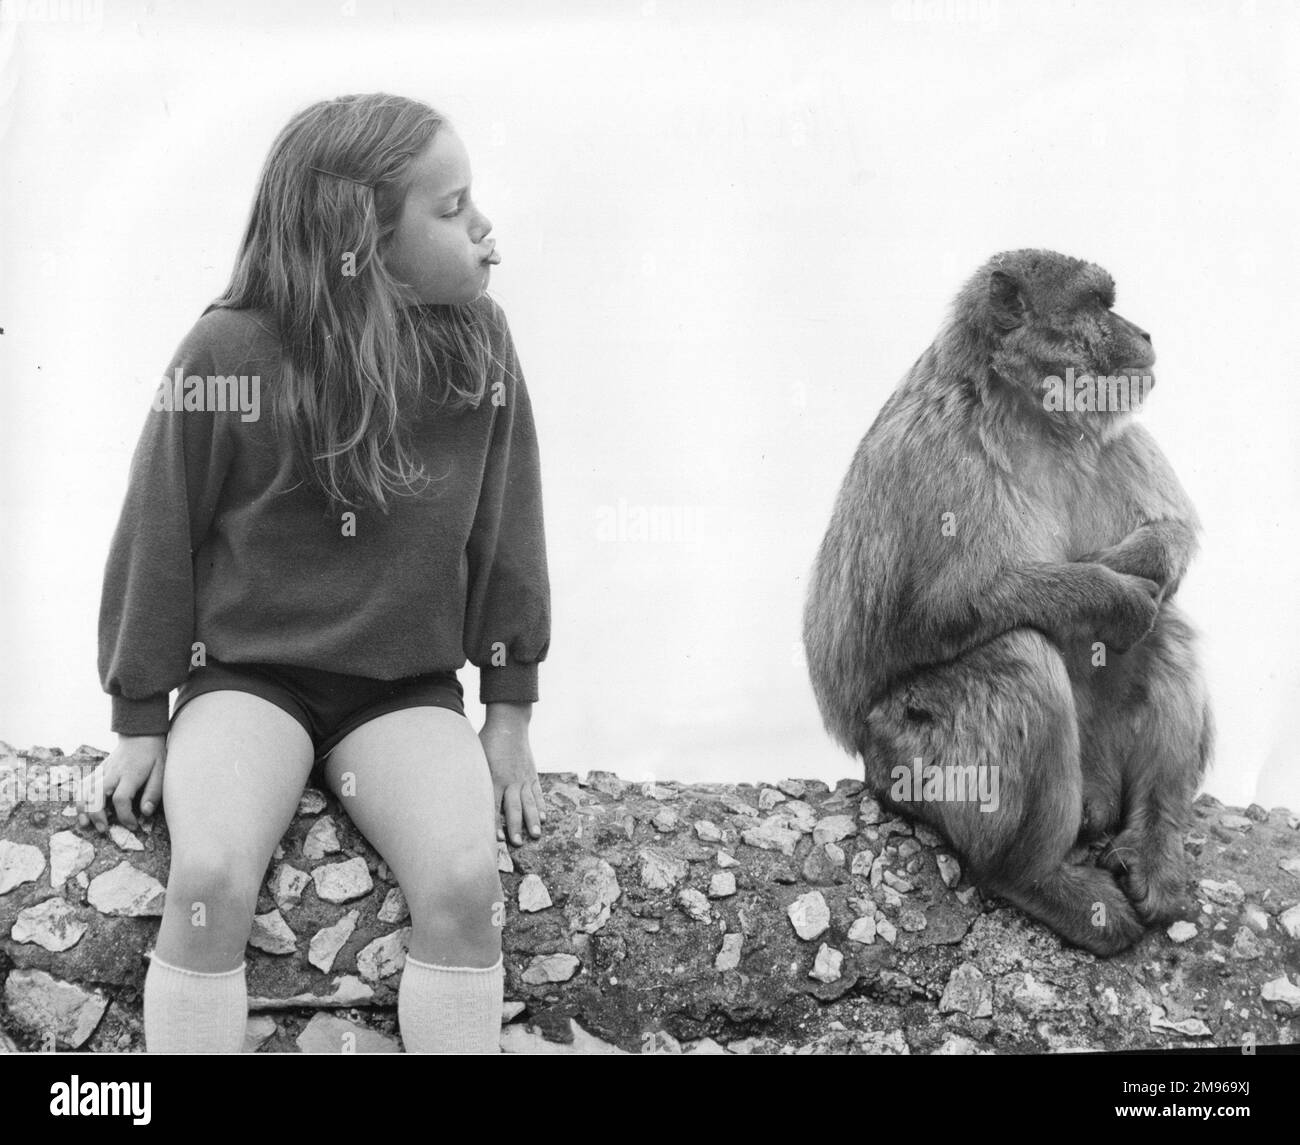 Una bambina seduta accanto a un macaco barbaro di Gibilterra (Macaca Sylvanus), cercando di imitare i suoi manierismi. Questi animali si trovano sulla roccia superiore di Gibilterra, e sono conosciuti localmente come apici barbariche o apici rocciose, sebbene siano in realtà scimmie piuttosto che scimmie. Foto Stock